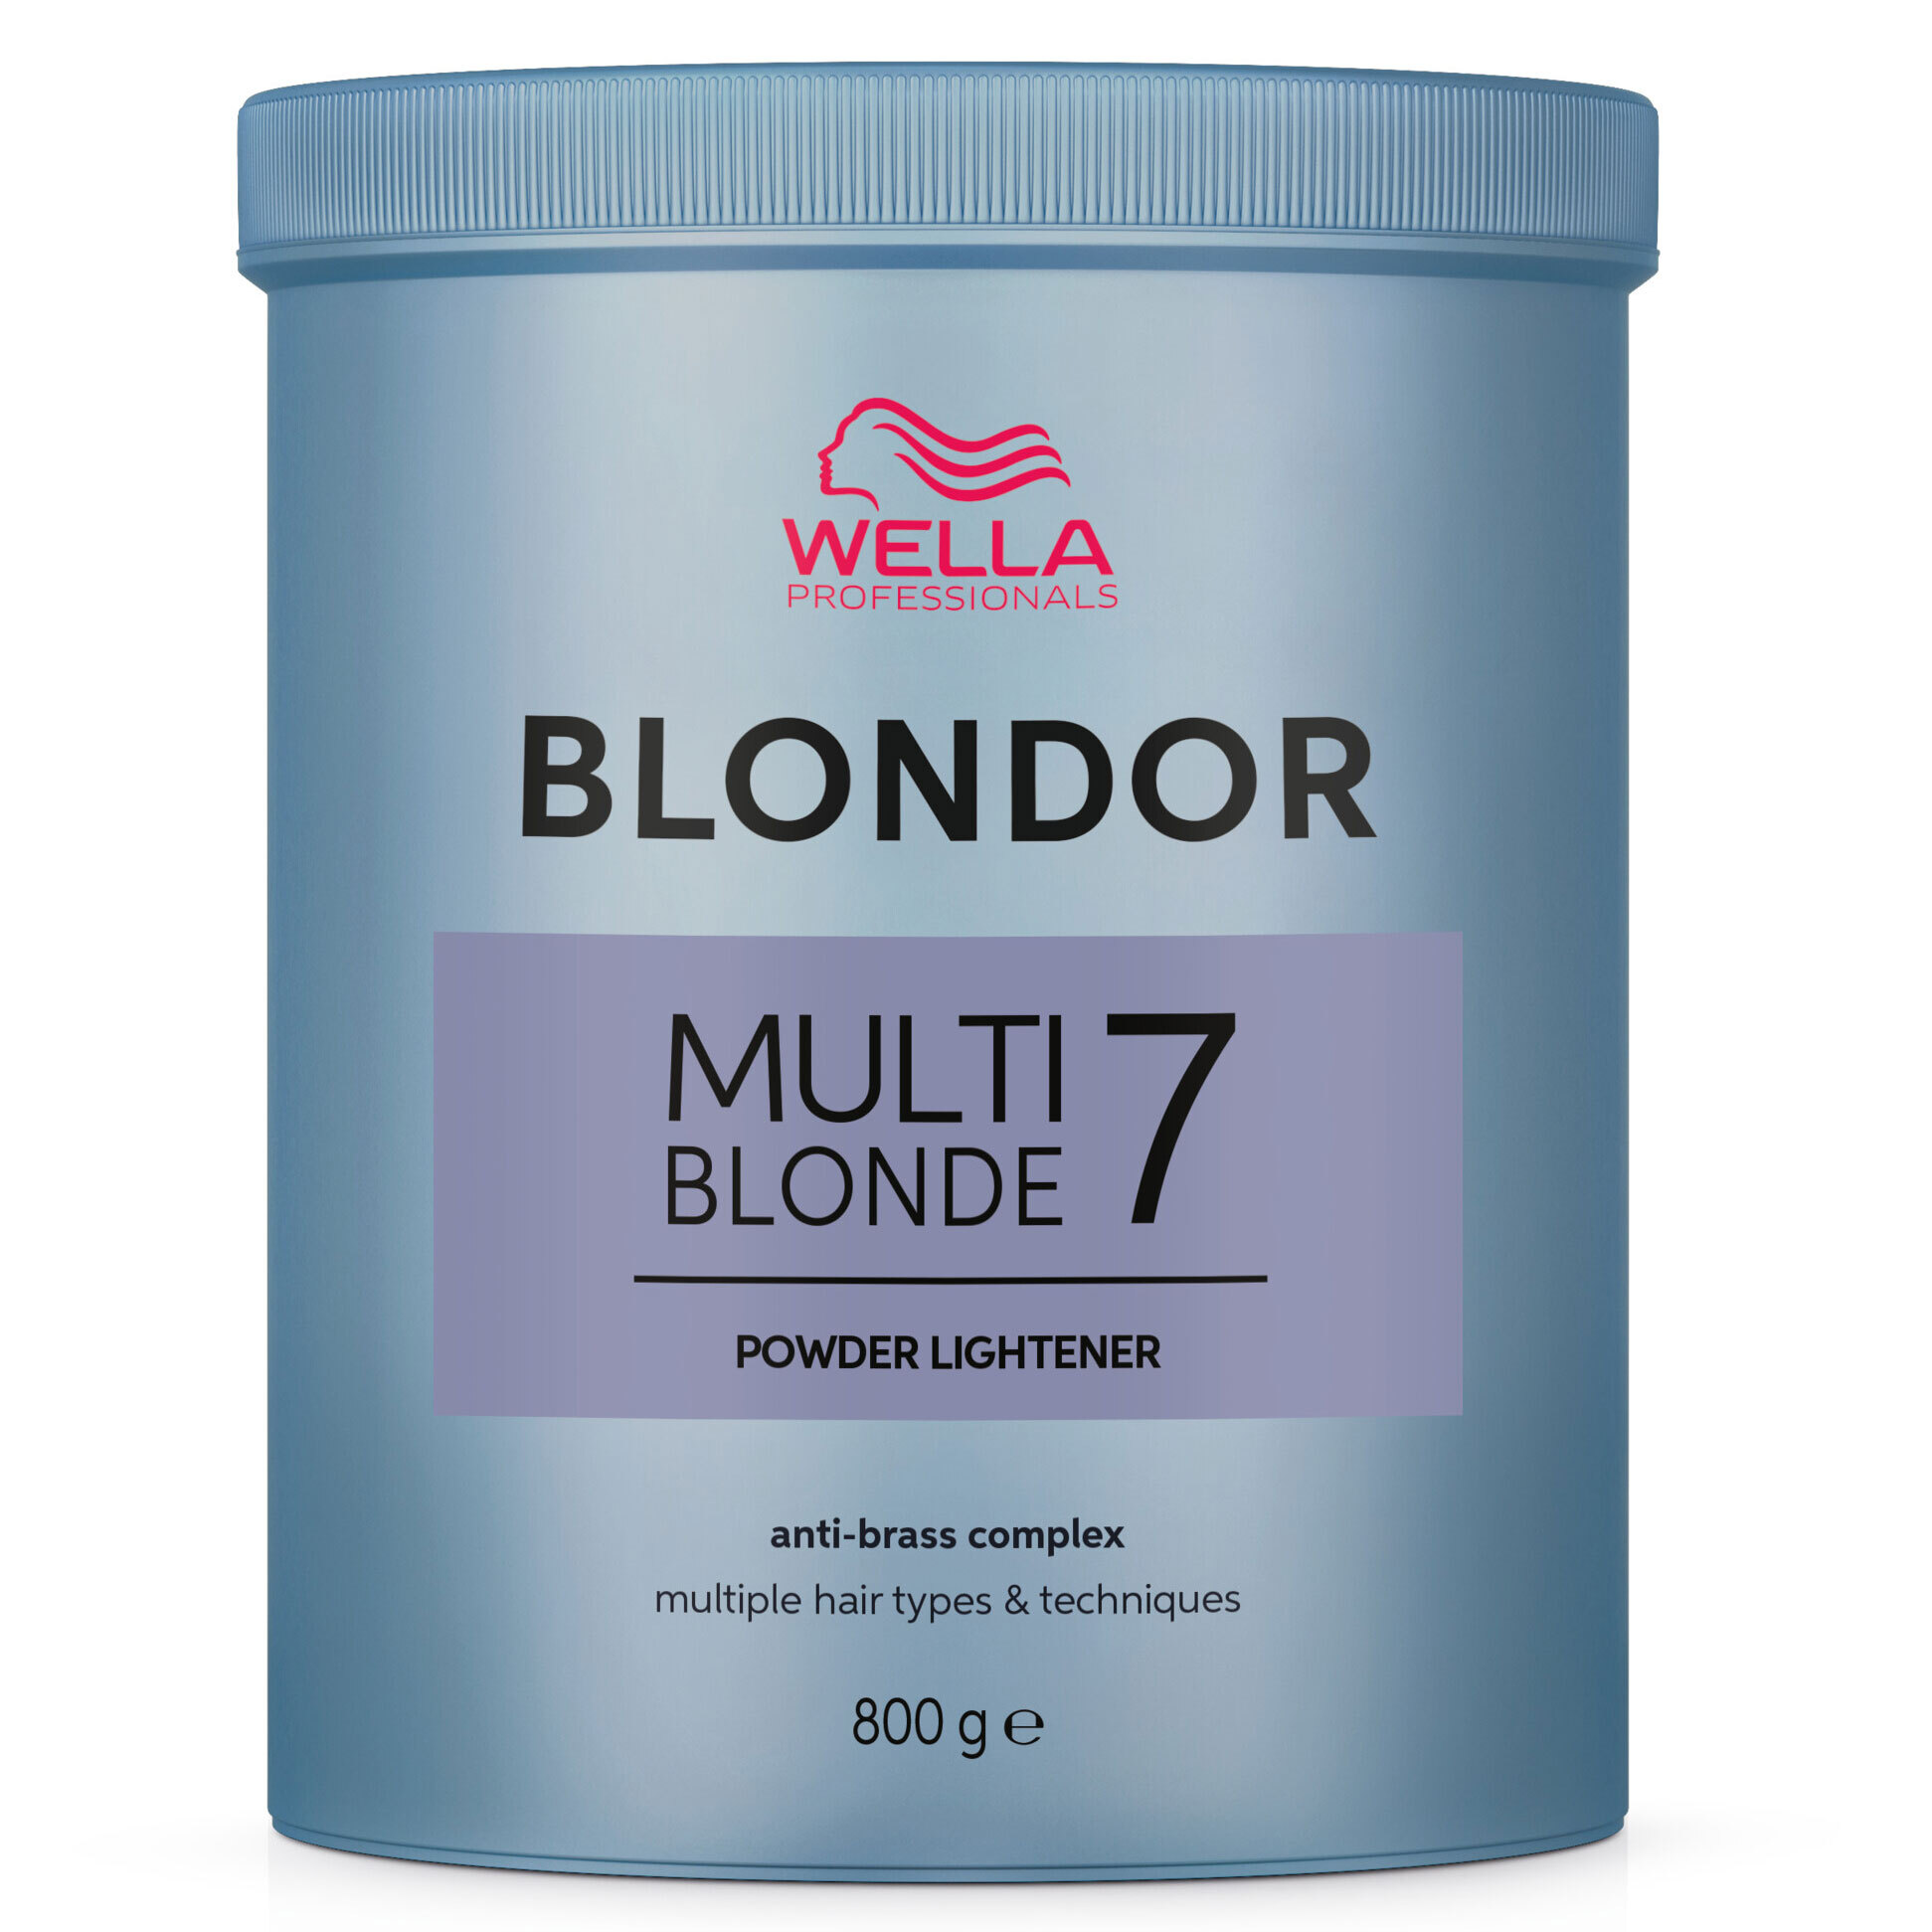 Wella Blondor Multi-Blonde 7 Powder Lightener